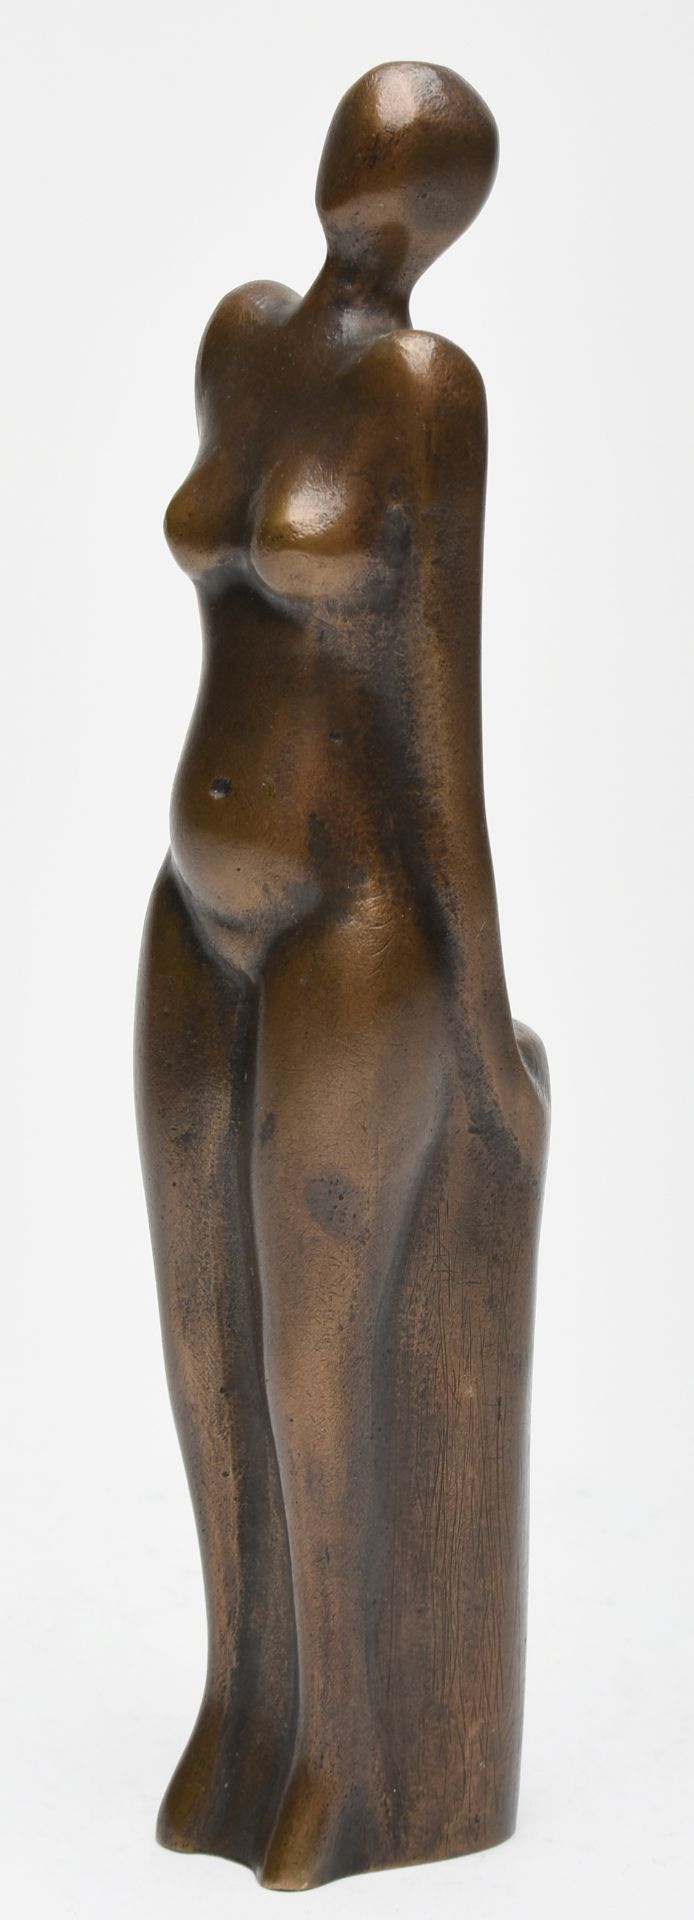 Stehende Bronze, braun patiniert, weiblicher Akt an Säule anlehnend, leicht abstrahierte - Bild 3 aus 5